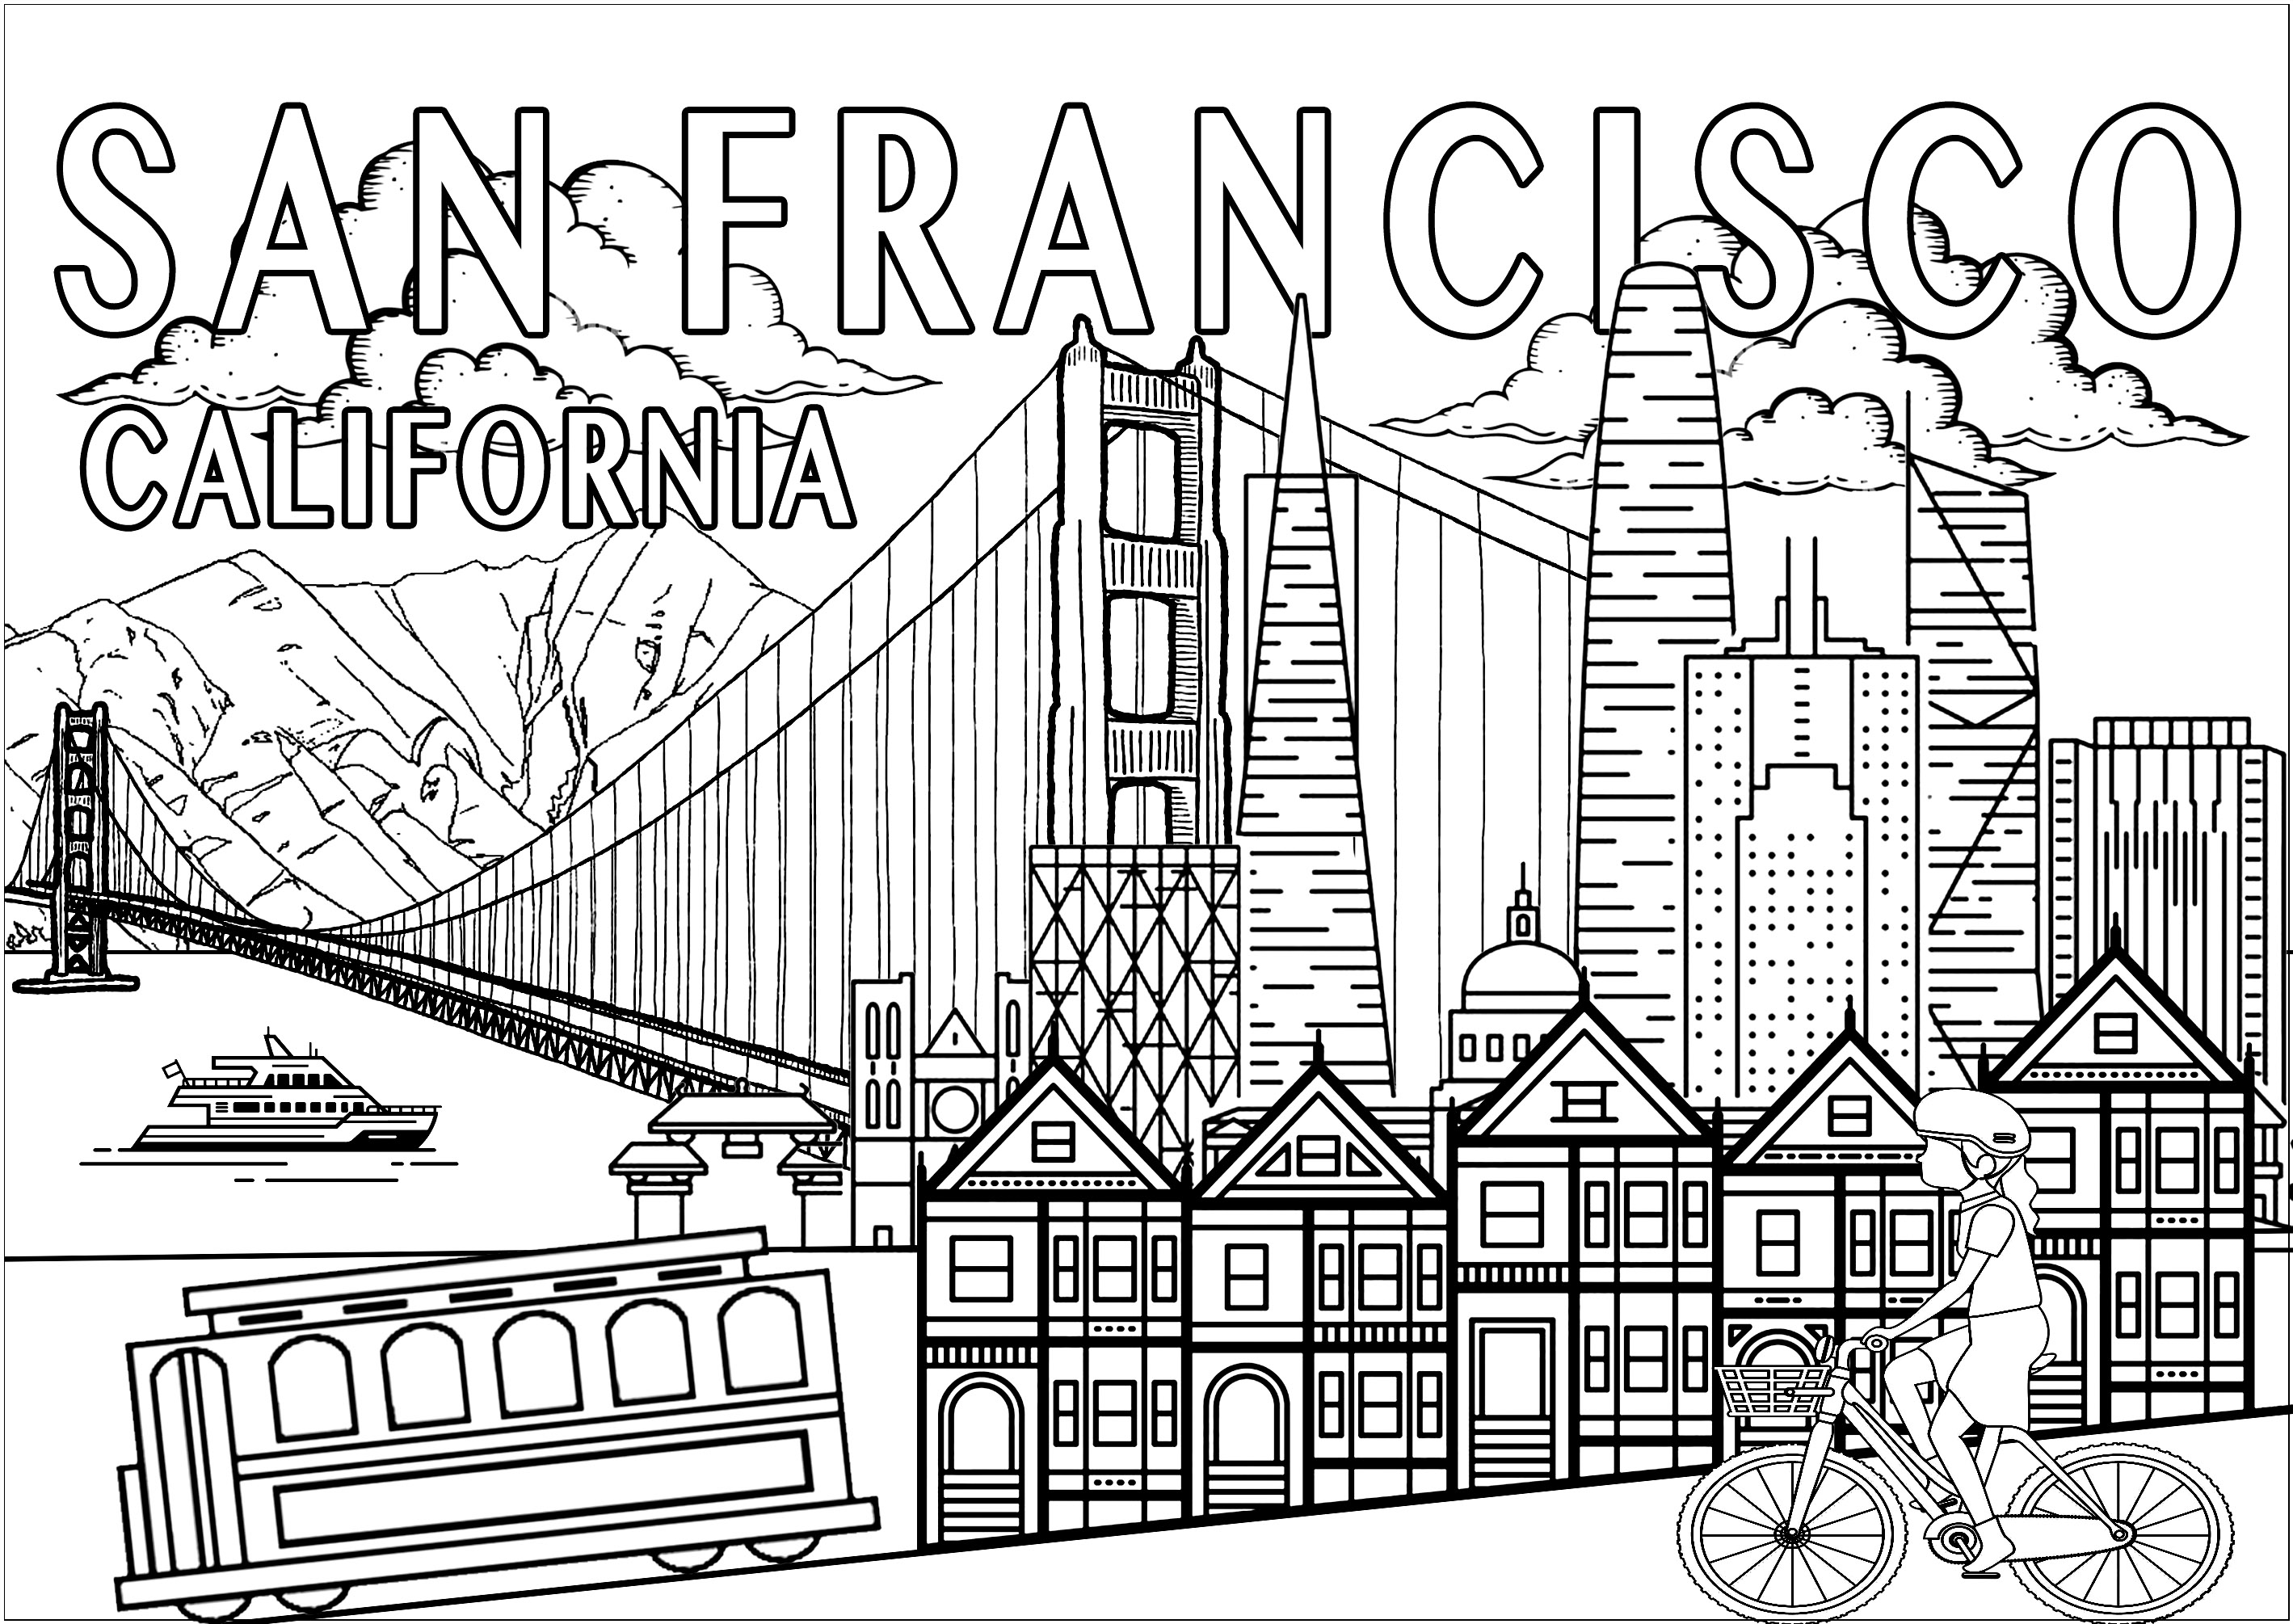 Colorate i principali monumenti e simboli di San Francisco!.  Il Golden Gate, le Painted Ladies, il tram, lo skyline con in particolare la Coit Tower... San Francisco, la 'Città della Baia', è una delle città più iconiche degli Stati Uniti. Una visita obbligata durante un viaggio in California!